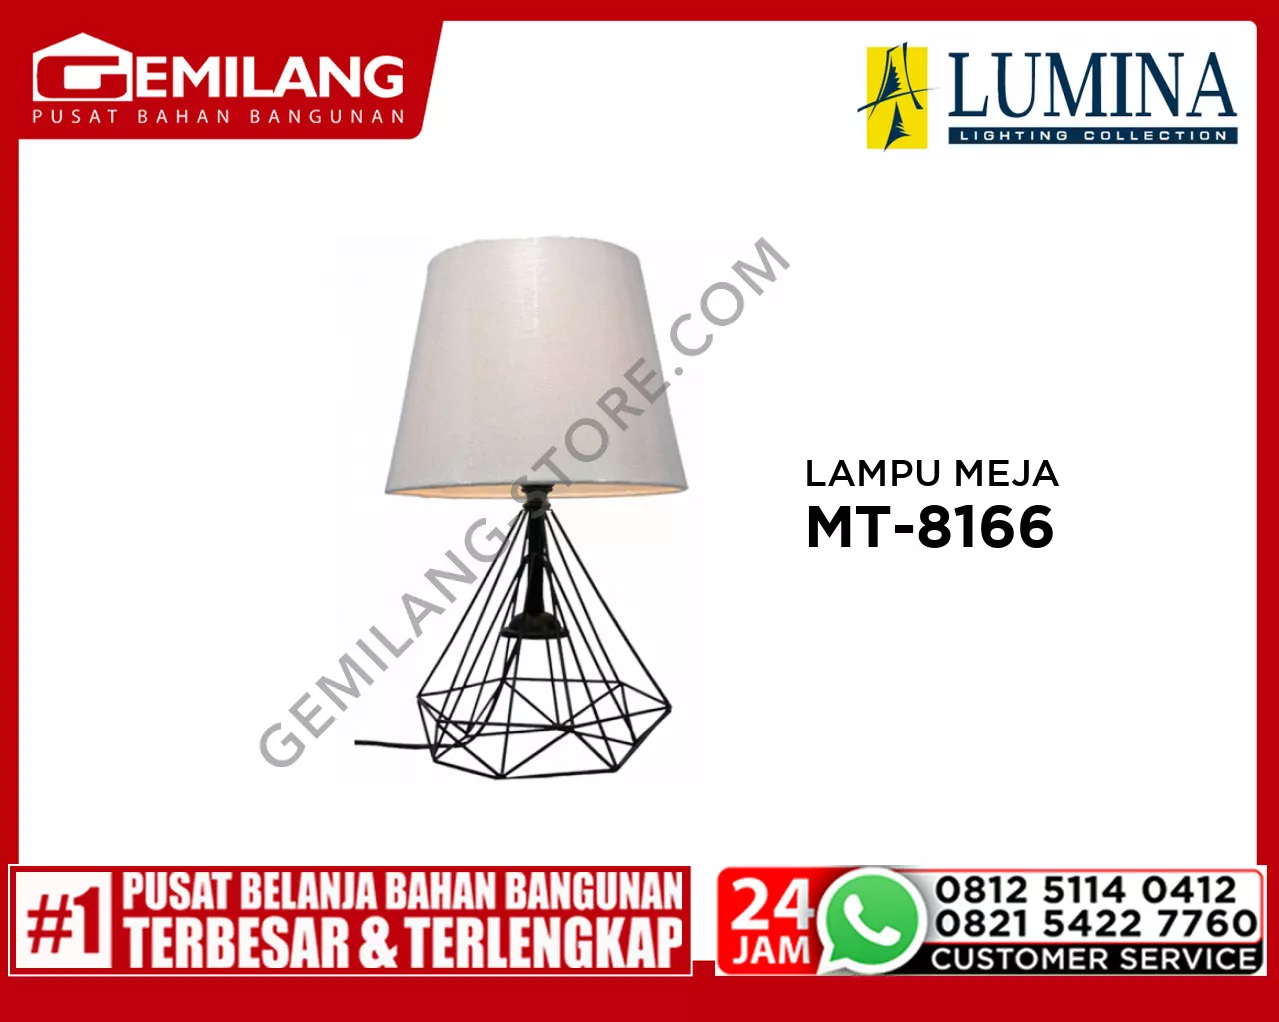 LAMPU MEJA MT-8166